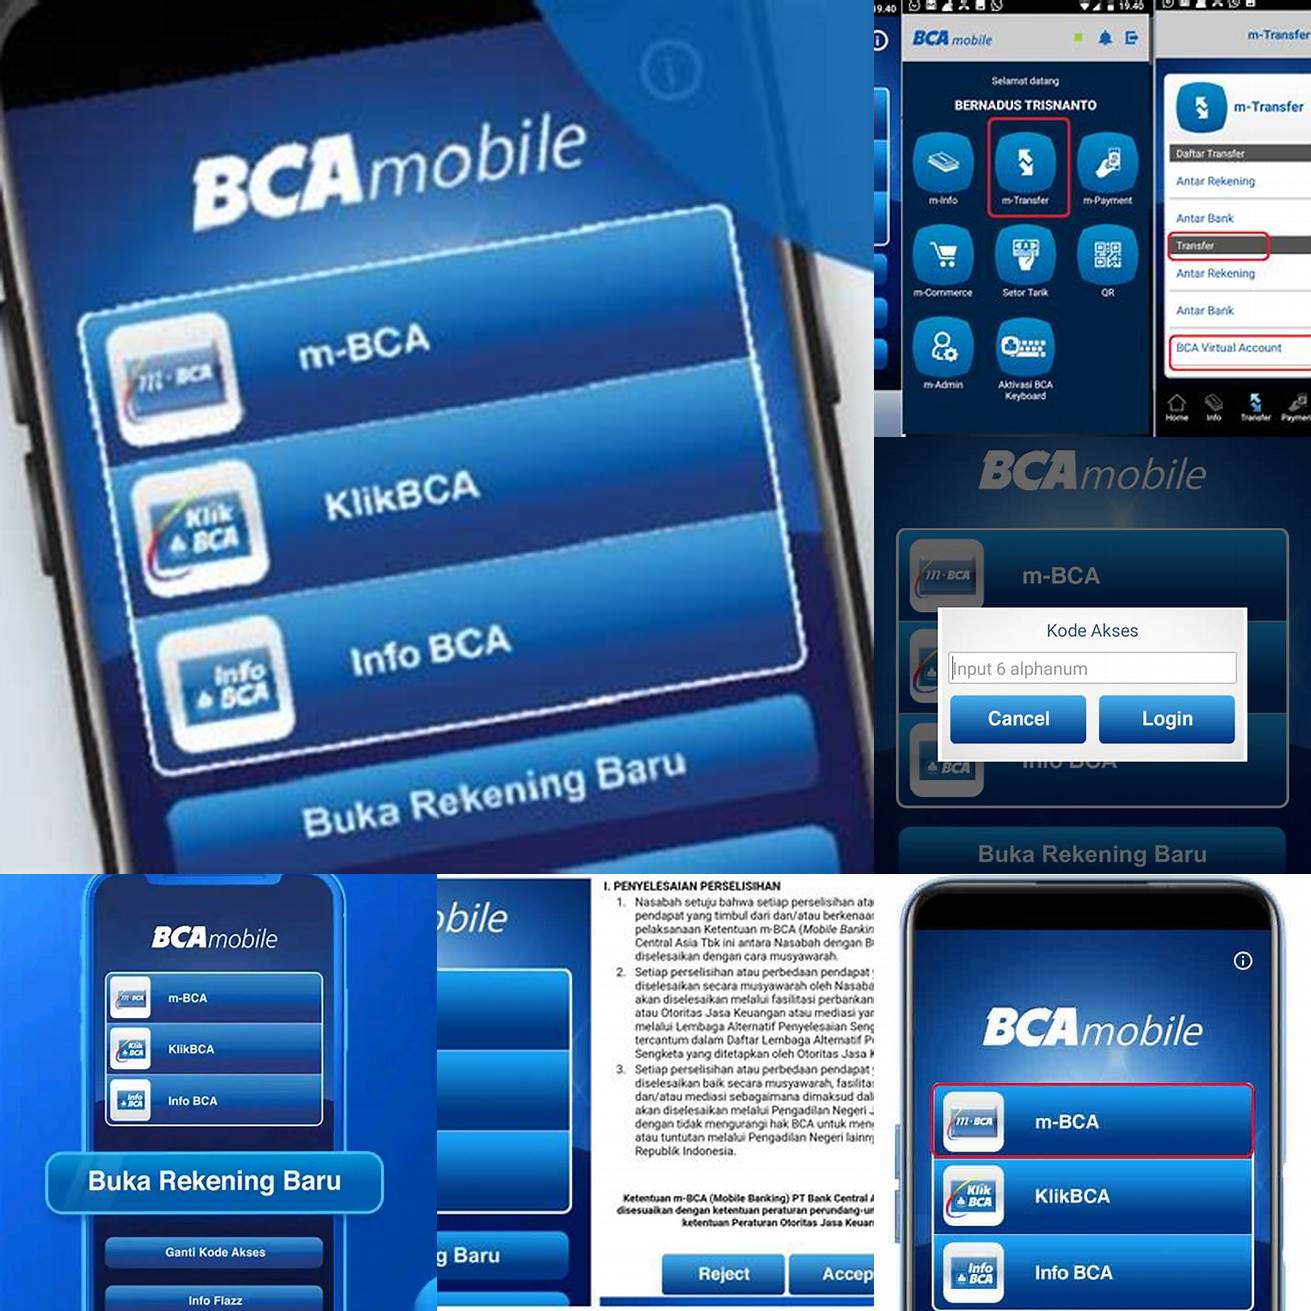 Masuk ke aplikasi BCA mobile